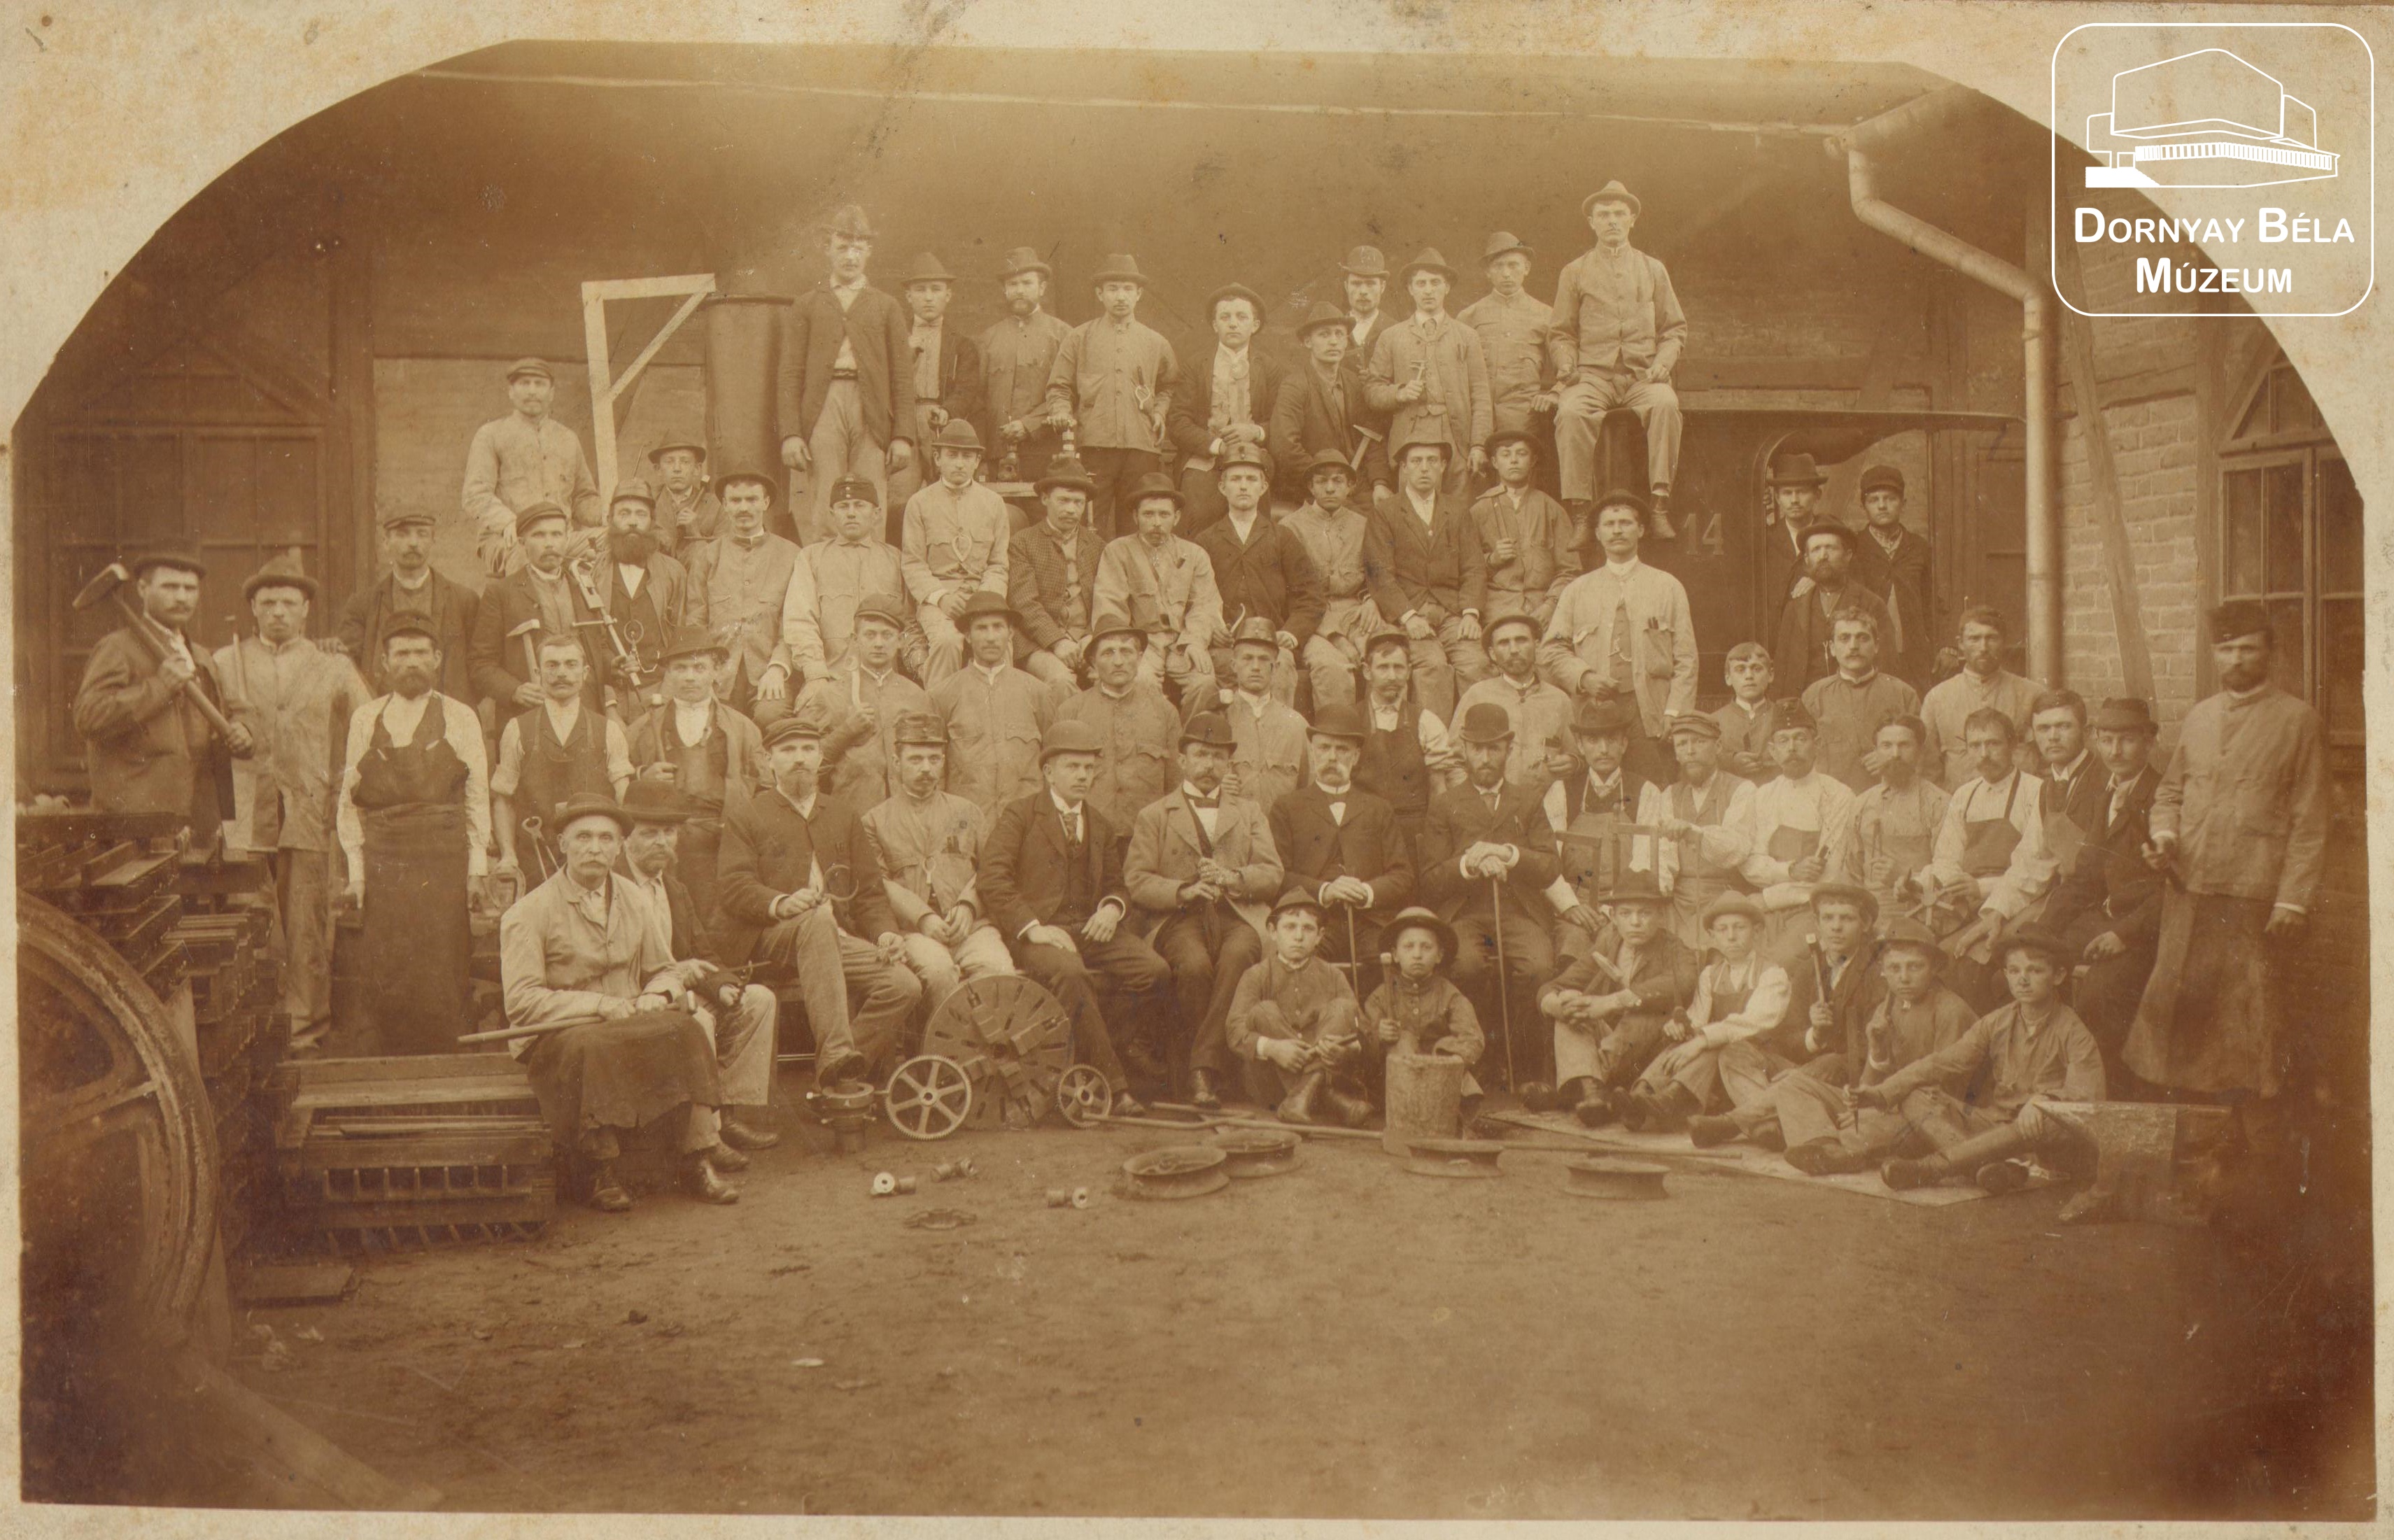 Inászó-bányatelepi gépműhely vezetői és dolgozói. (Dornyay Béla Múzeum, Salgótarján CC BY-NC-SA)